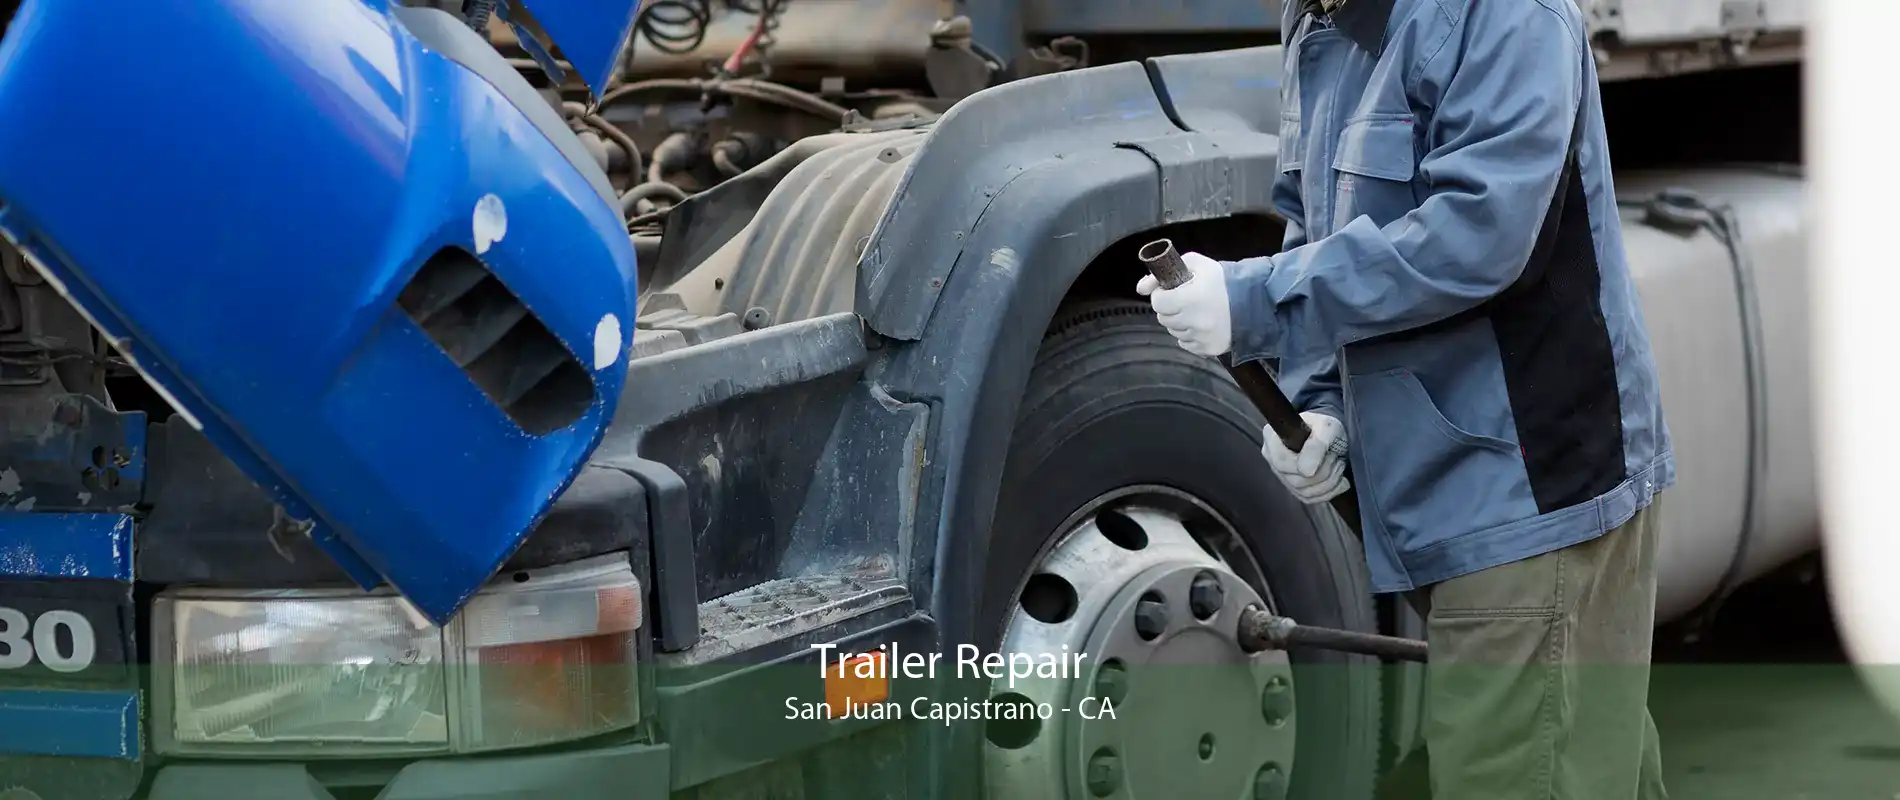 Trailer Repair San Juan Capistrano - CA